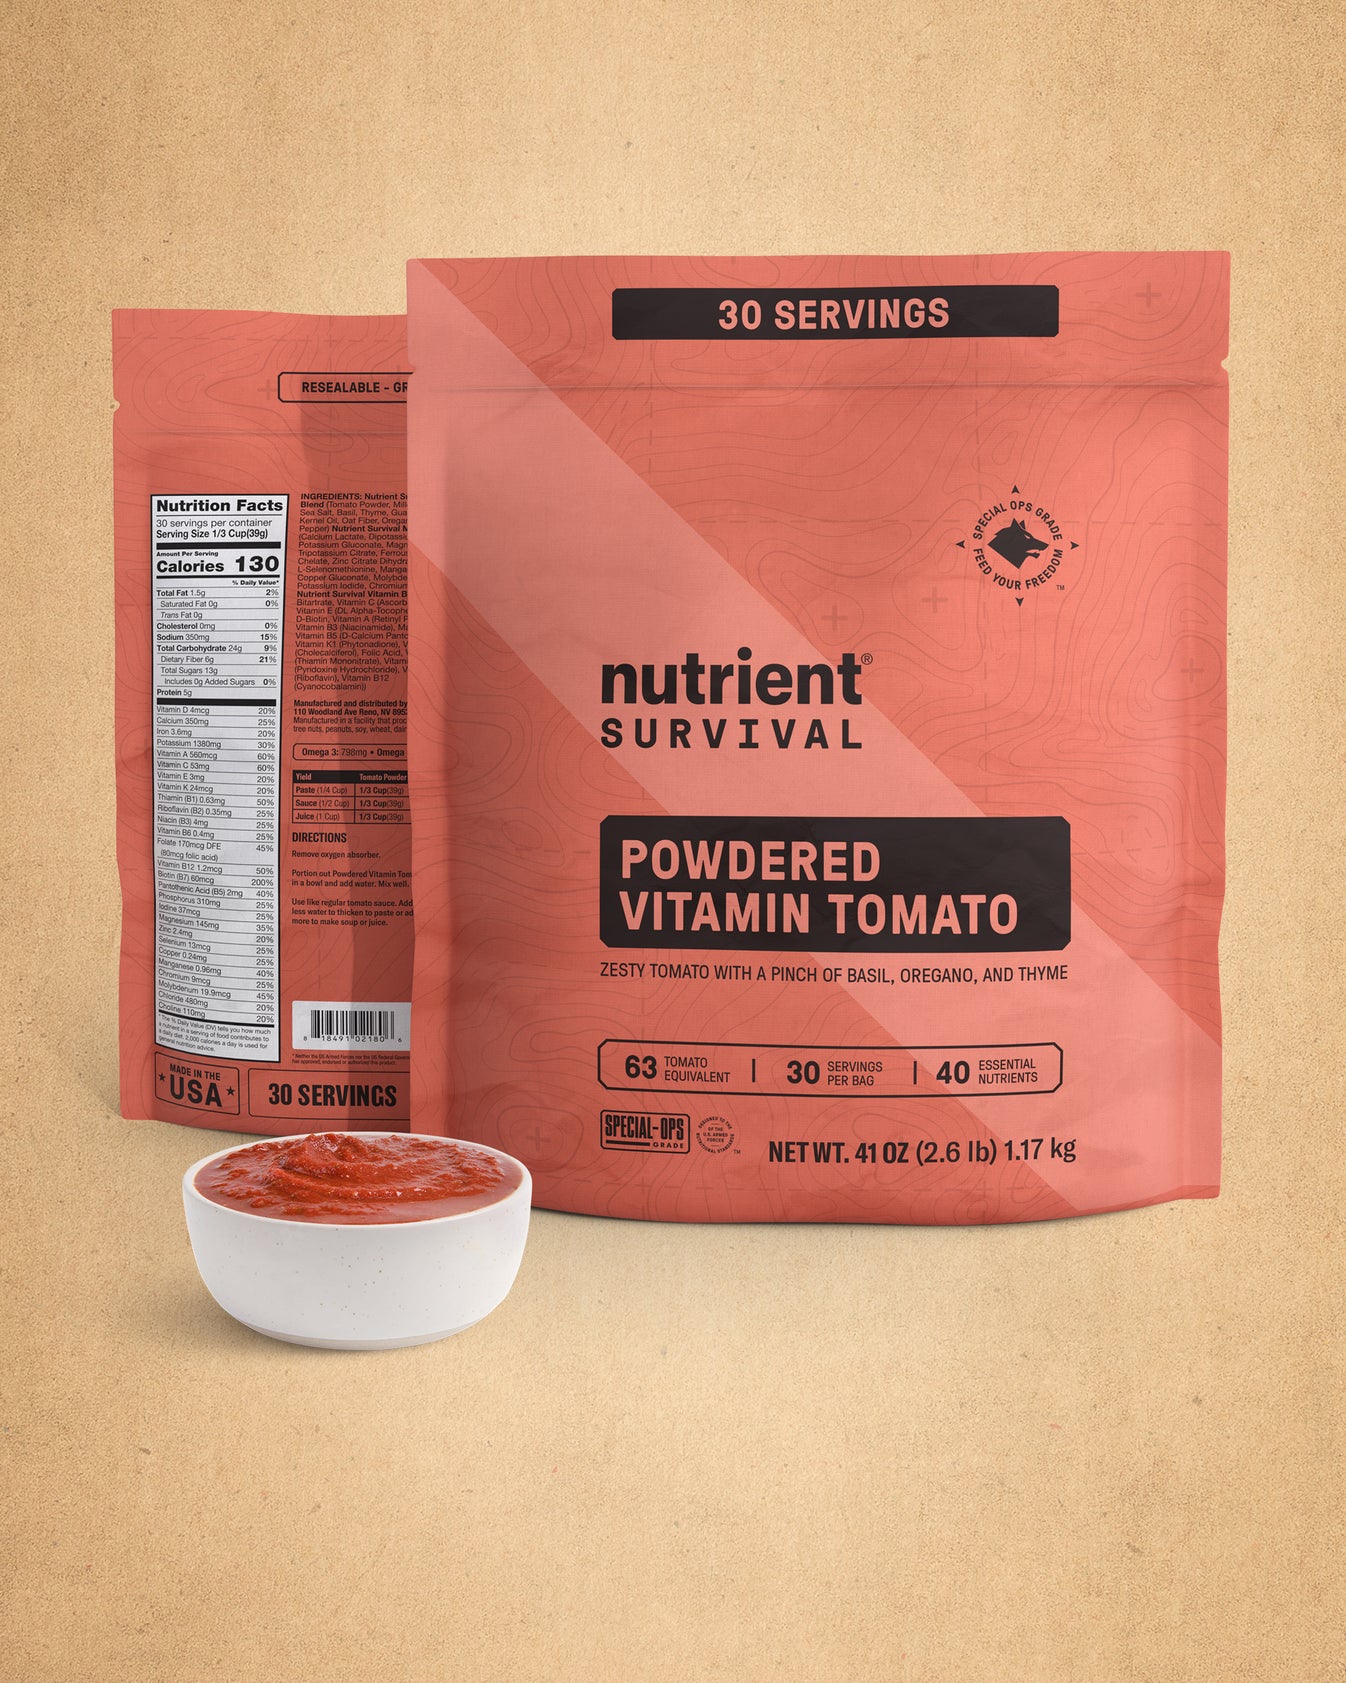 Powdered Vitamin Tomato Pantry Pack